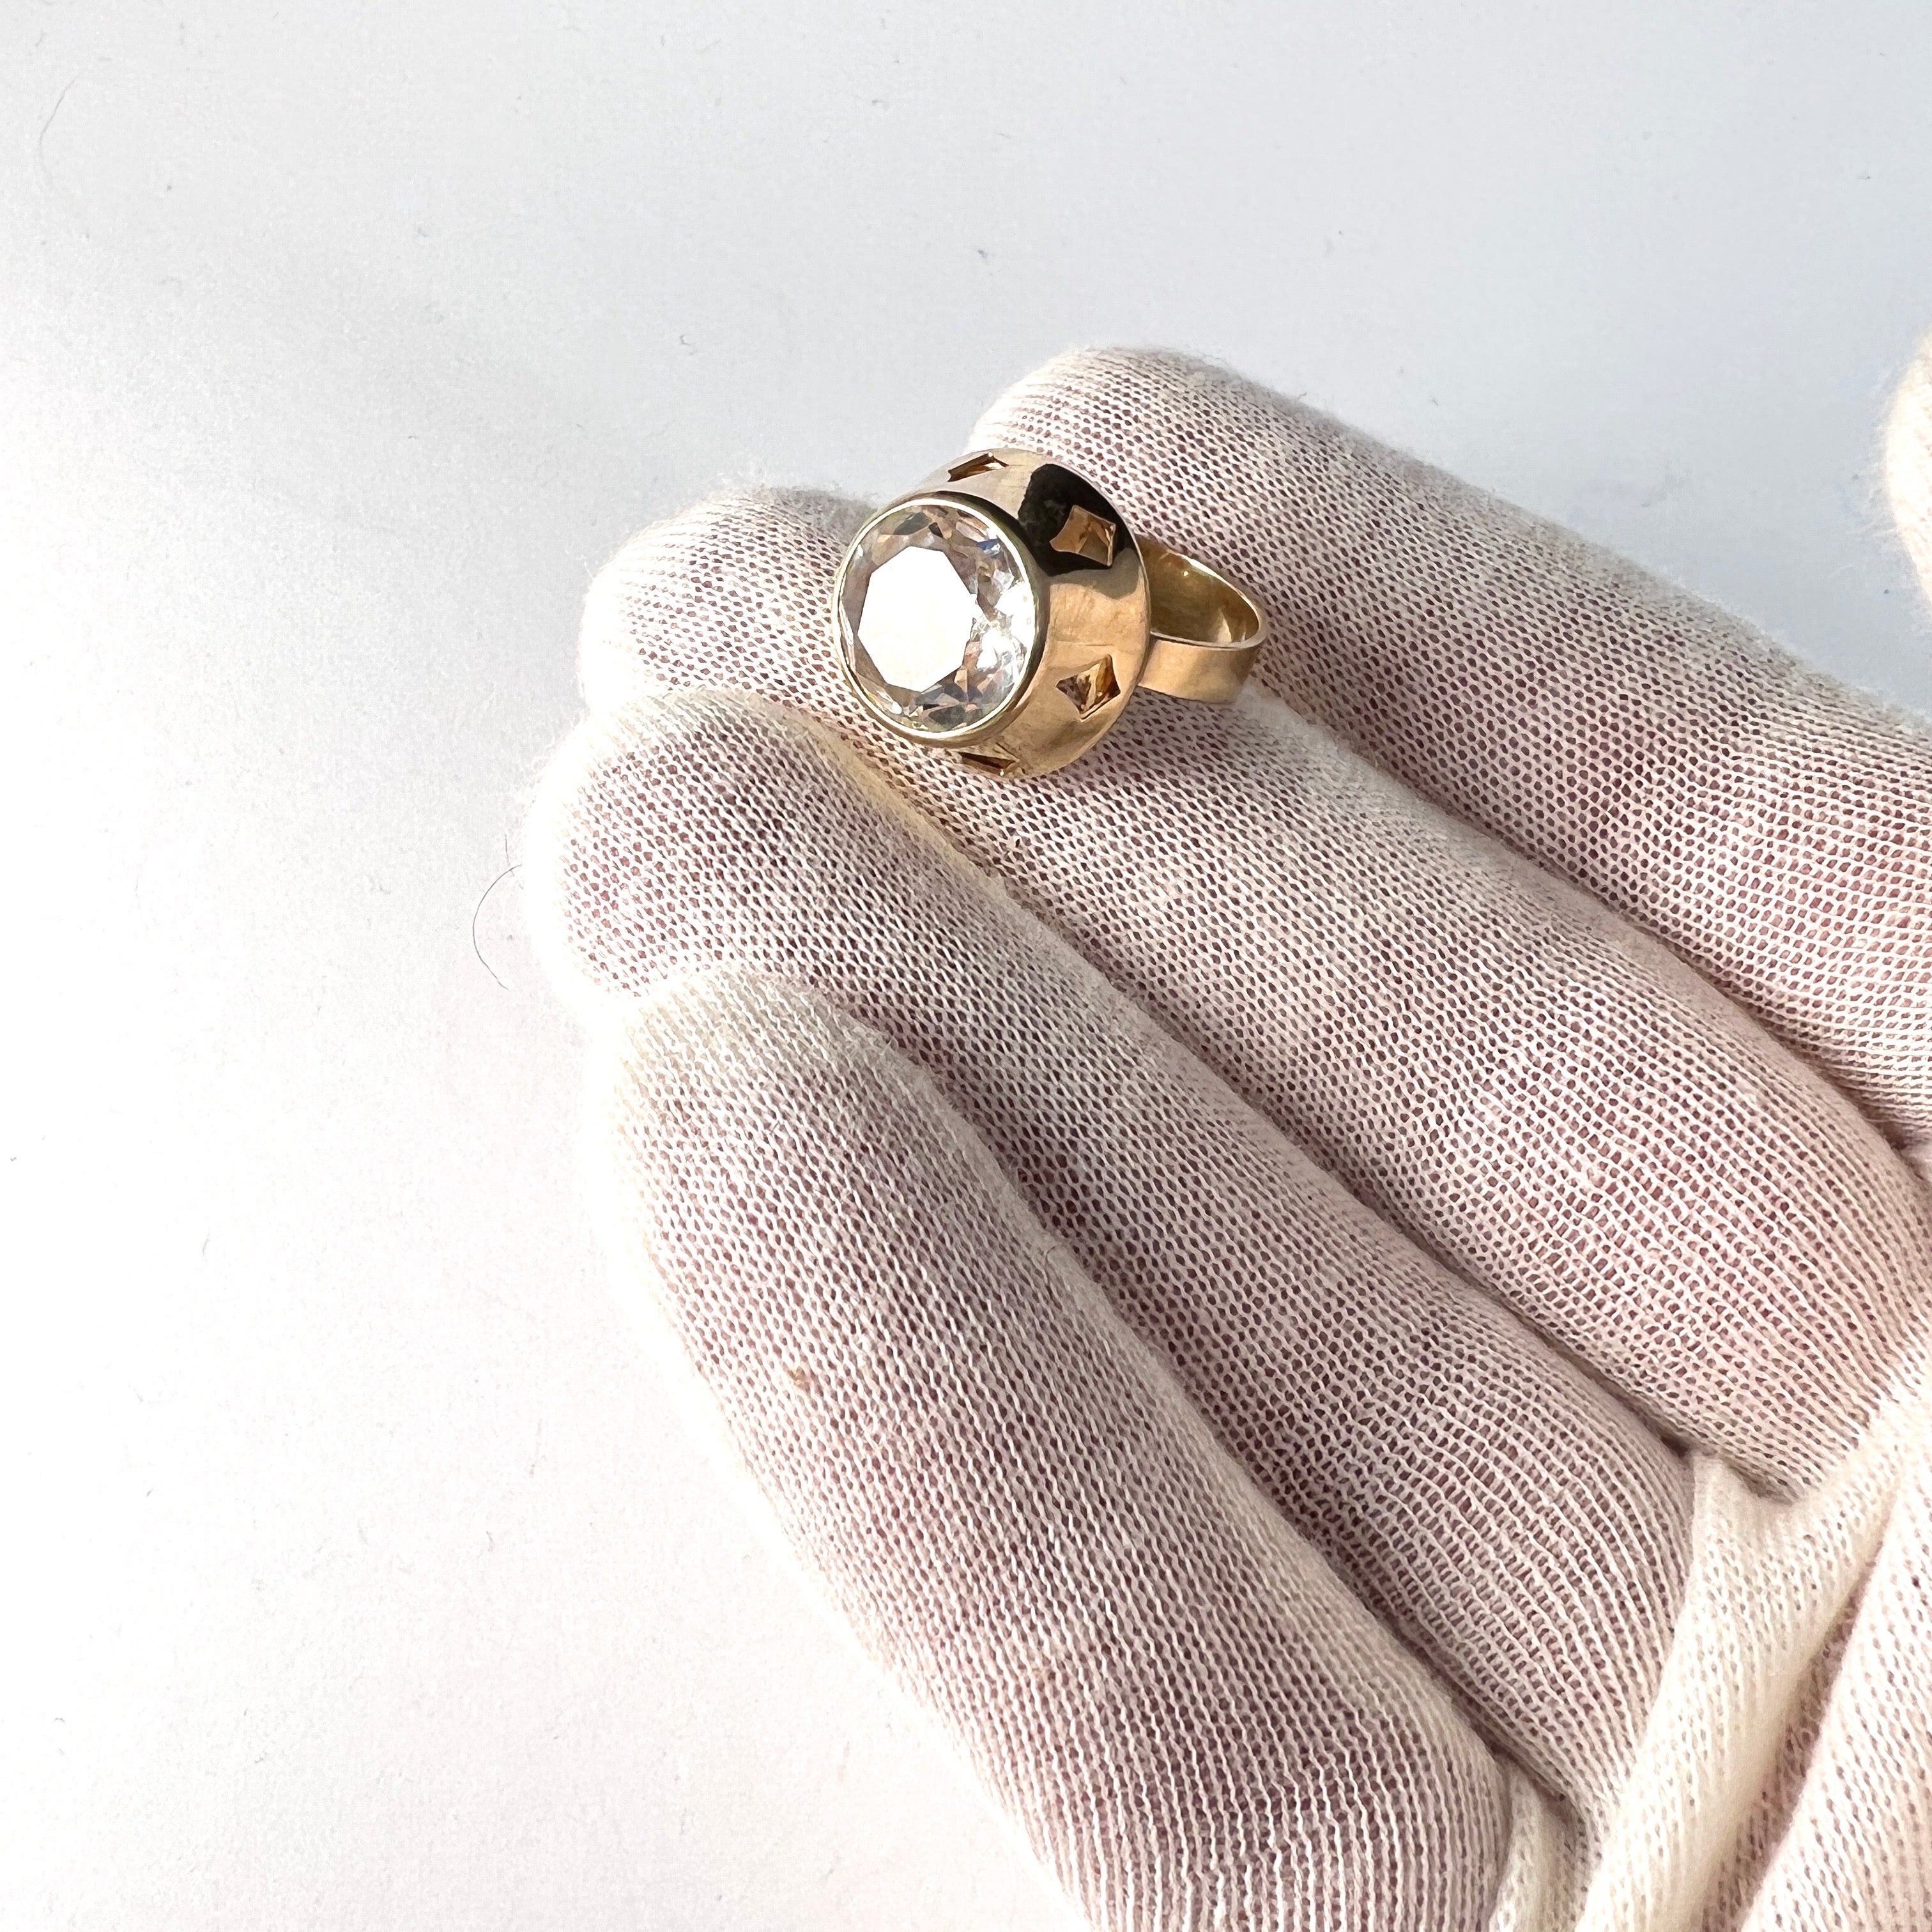 Finland 1960-70s. Vintage 18k Gold Rock Crystal Ring.